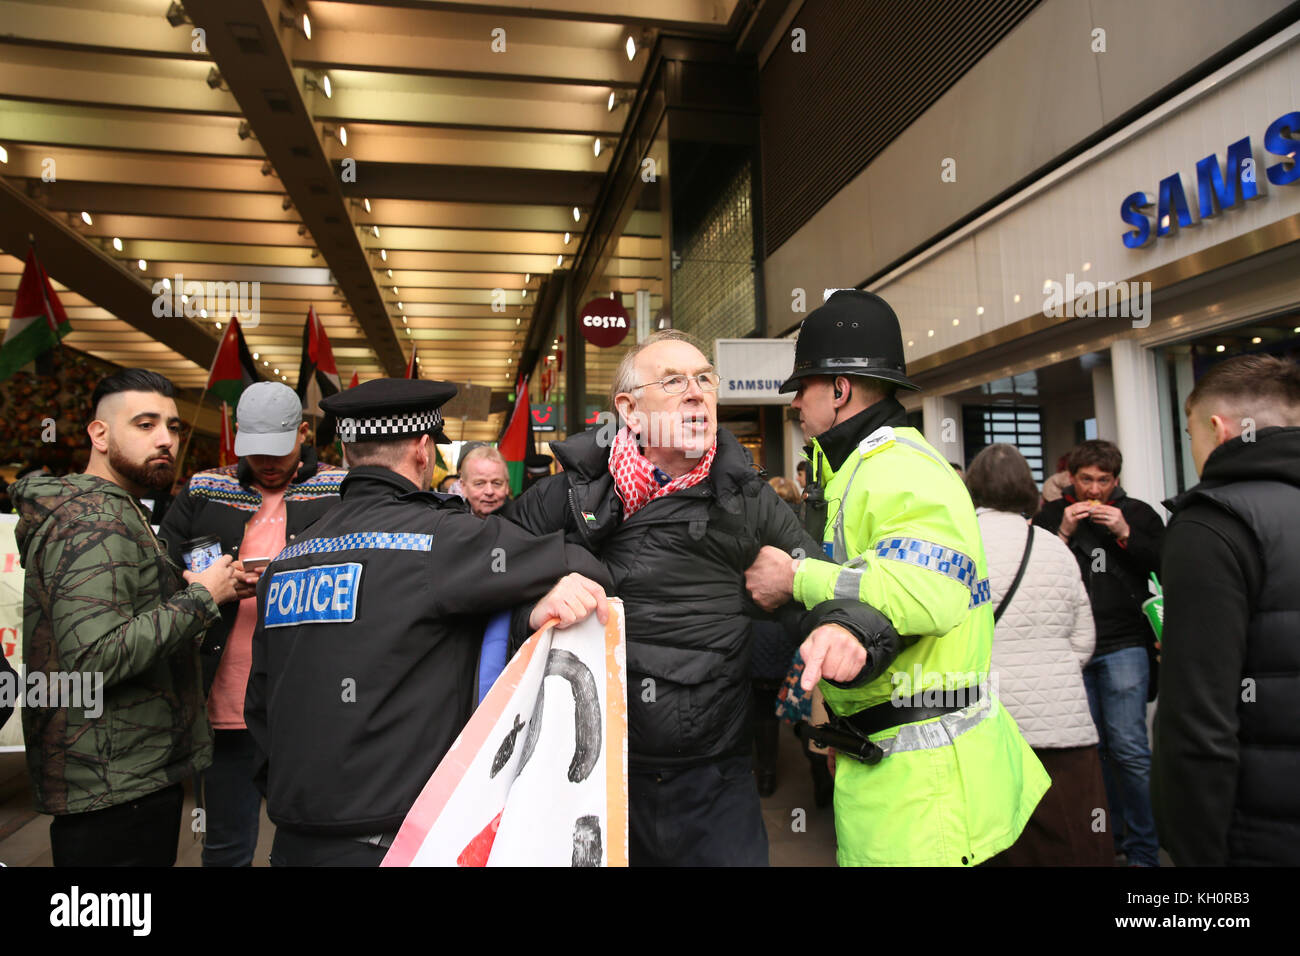 Manchester, UK. Nov 11, 2017. Escorte policière, un militant palestinien loin de manifestants sionistes à Manchester, le 11 novembre, 2017 Crédit : Barbara Cook/Alamy Live News Banque D'Images